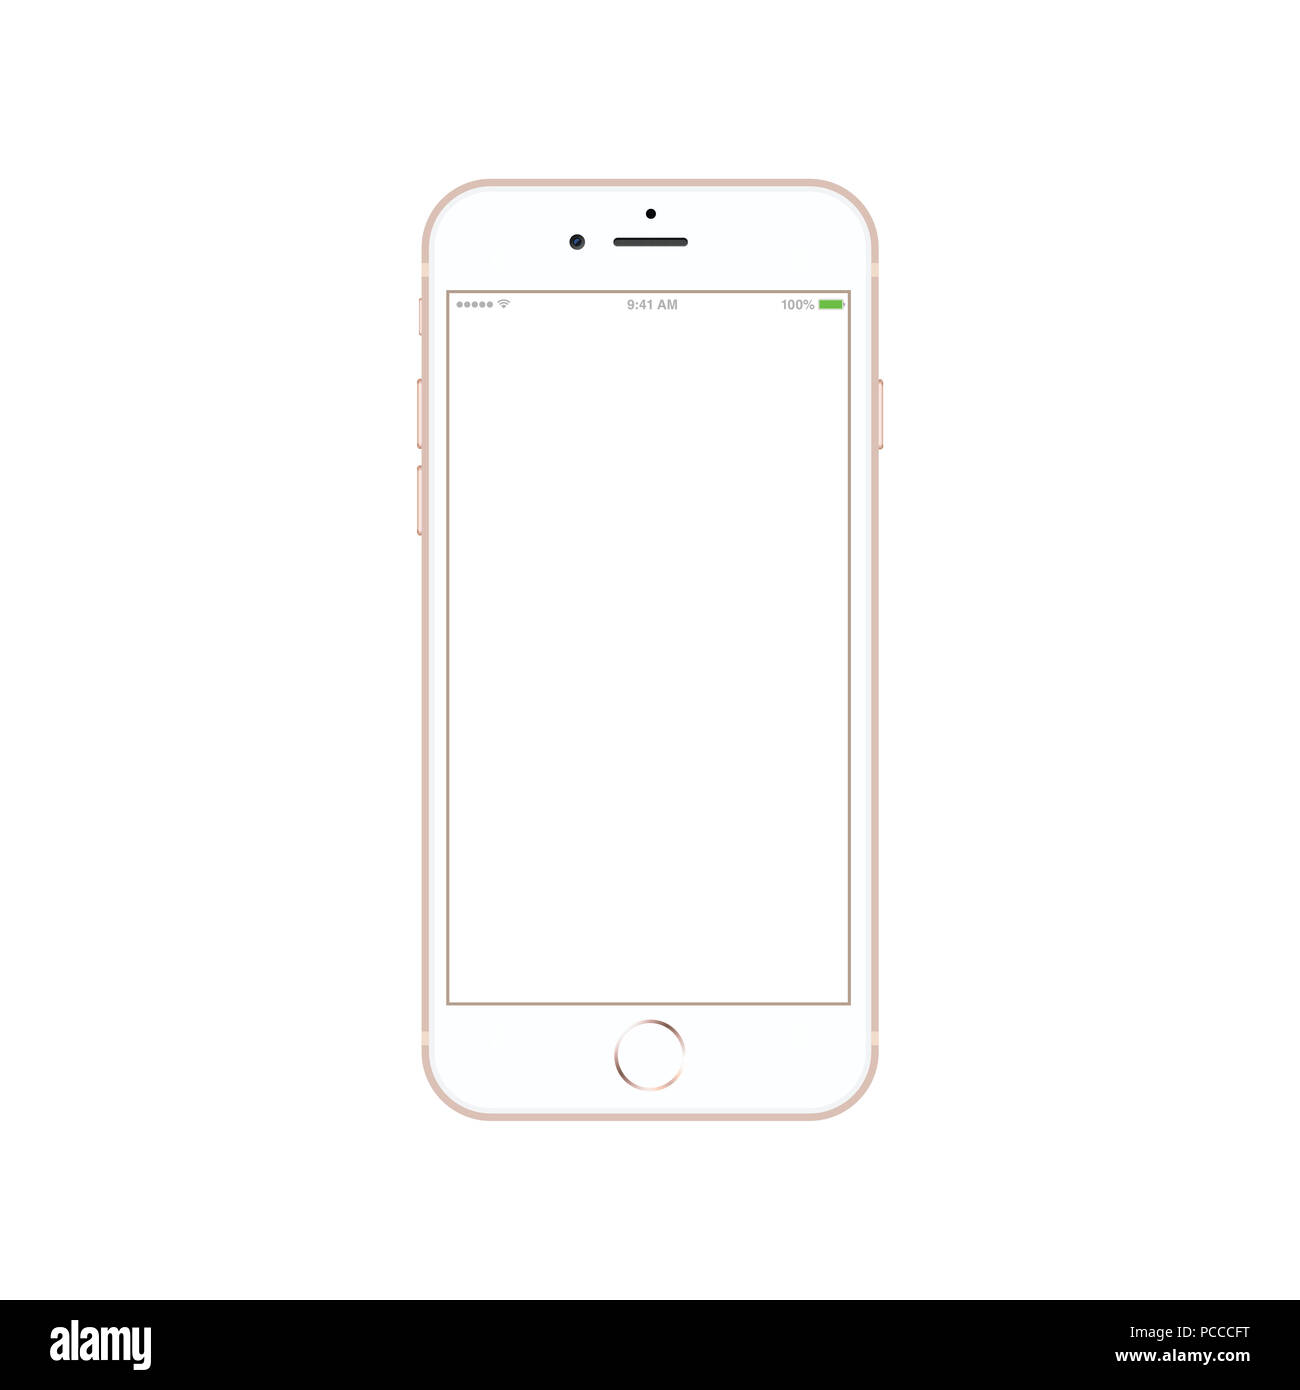 Apple iphone 6 Immagini senza sfondo e Foto Stock ritagliate - Pagina 2 -  Alamy